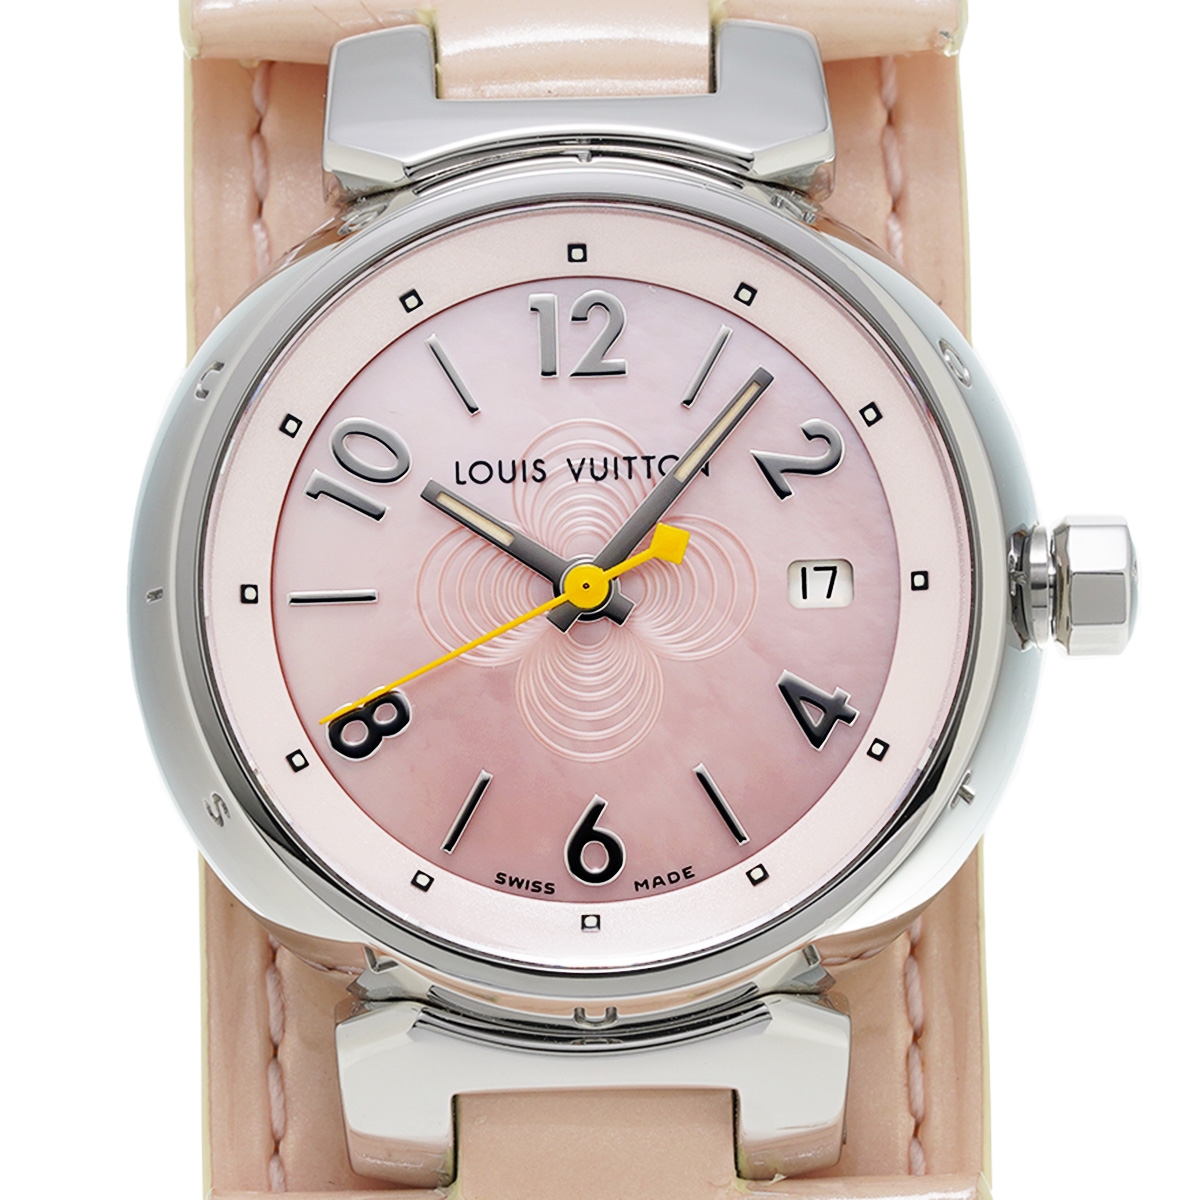 VUITTONのヴェルニ、時計、タンブール Q12160購入日シリアル番号も記入済み